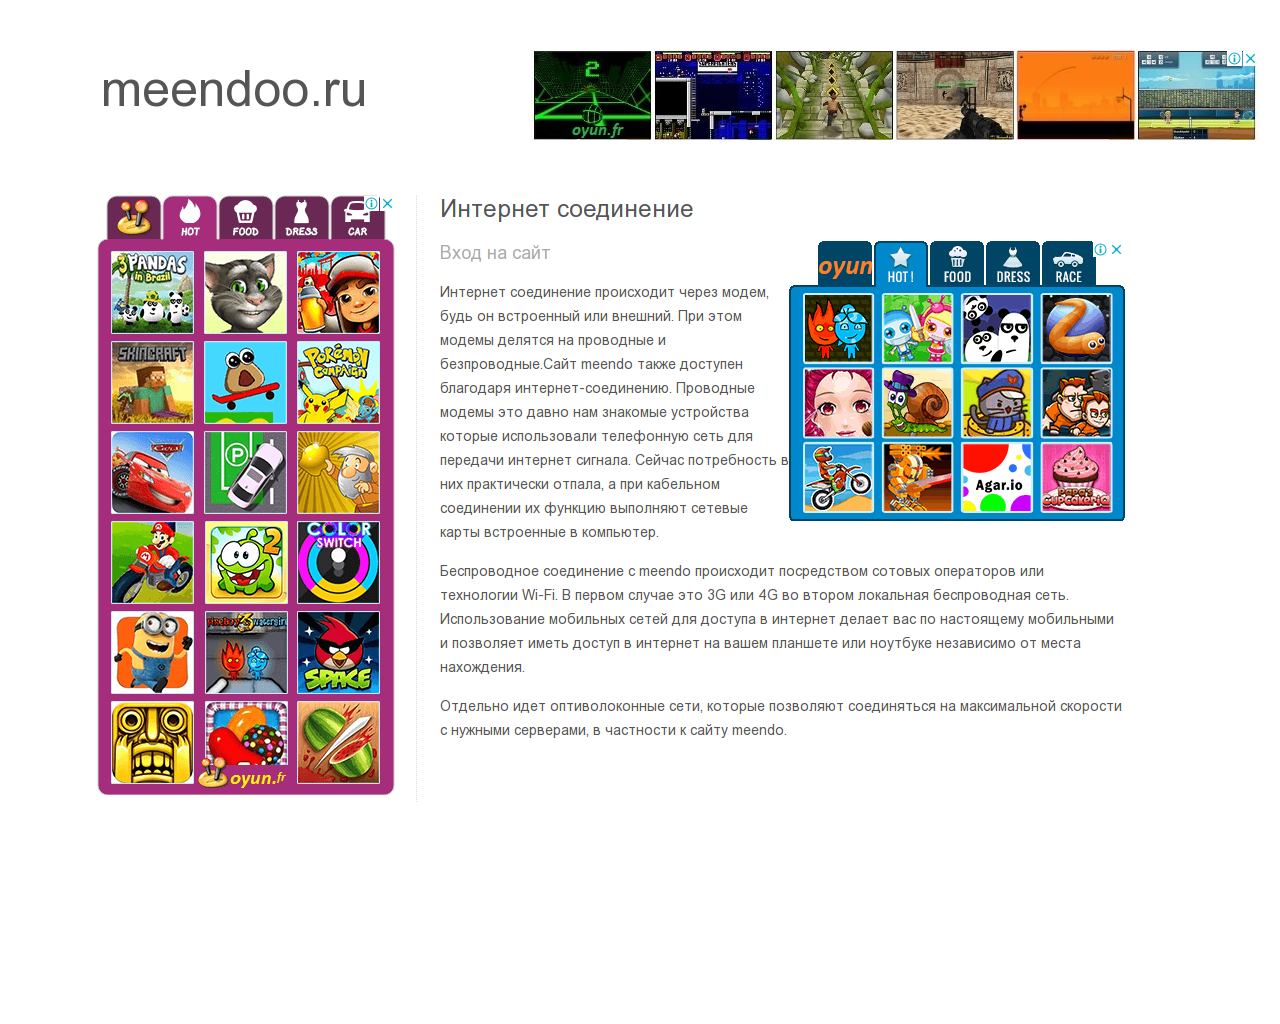 Изображение сайта meendoo.ru в разрешении 1280x1024